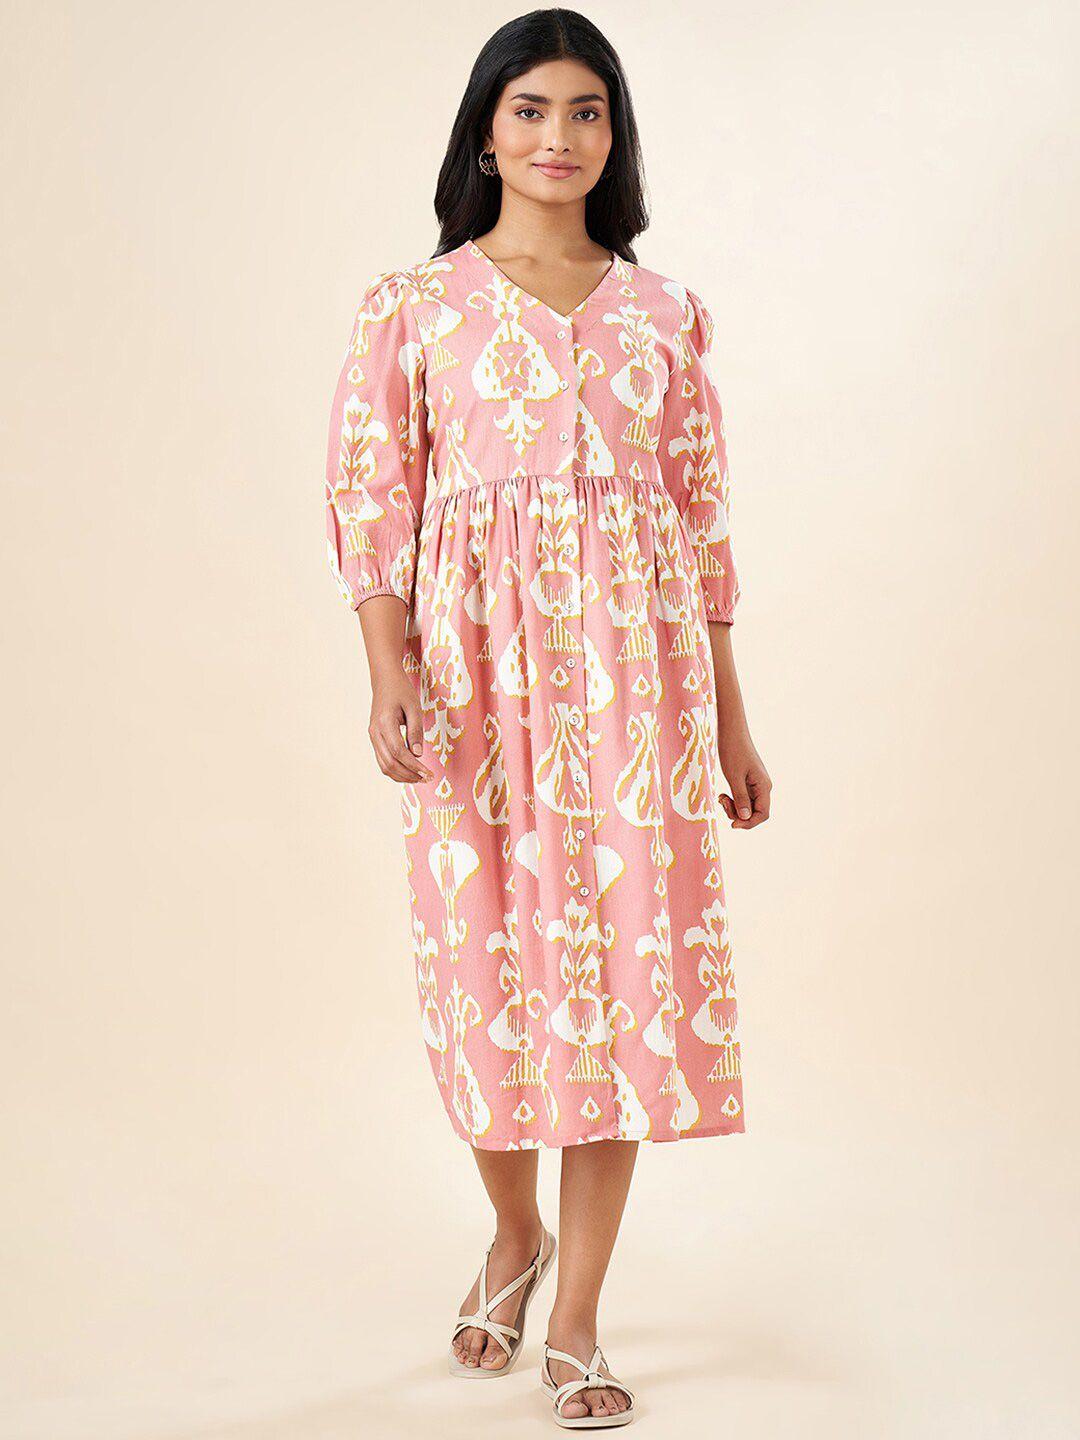 akkriti by pantaloons floral print a-line midi dress